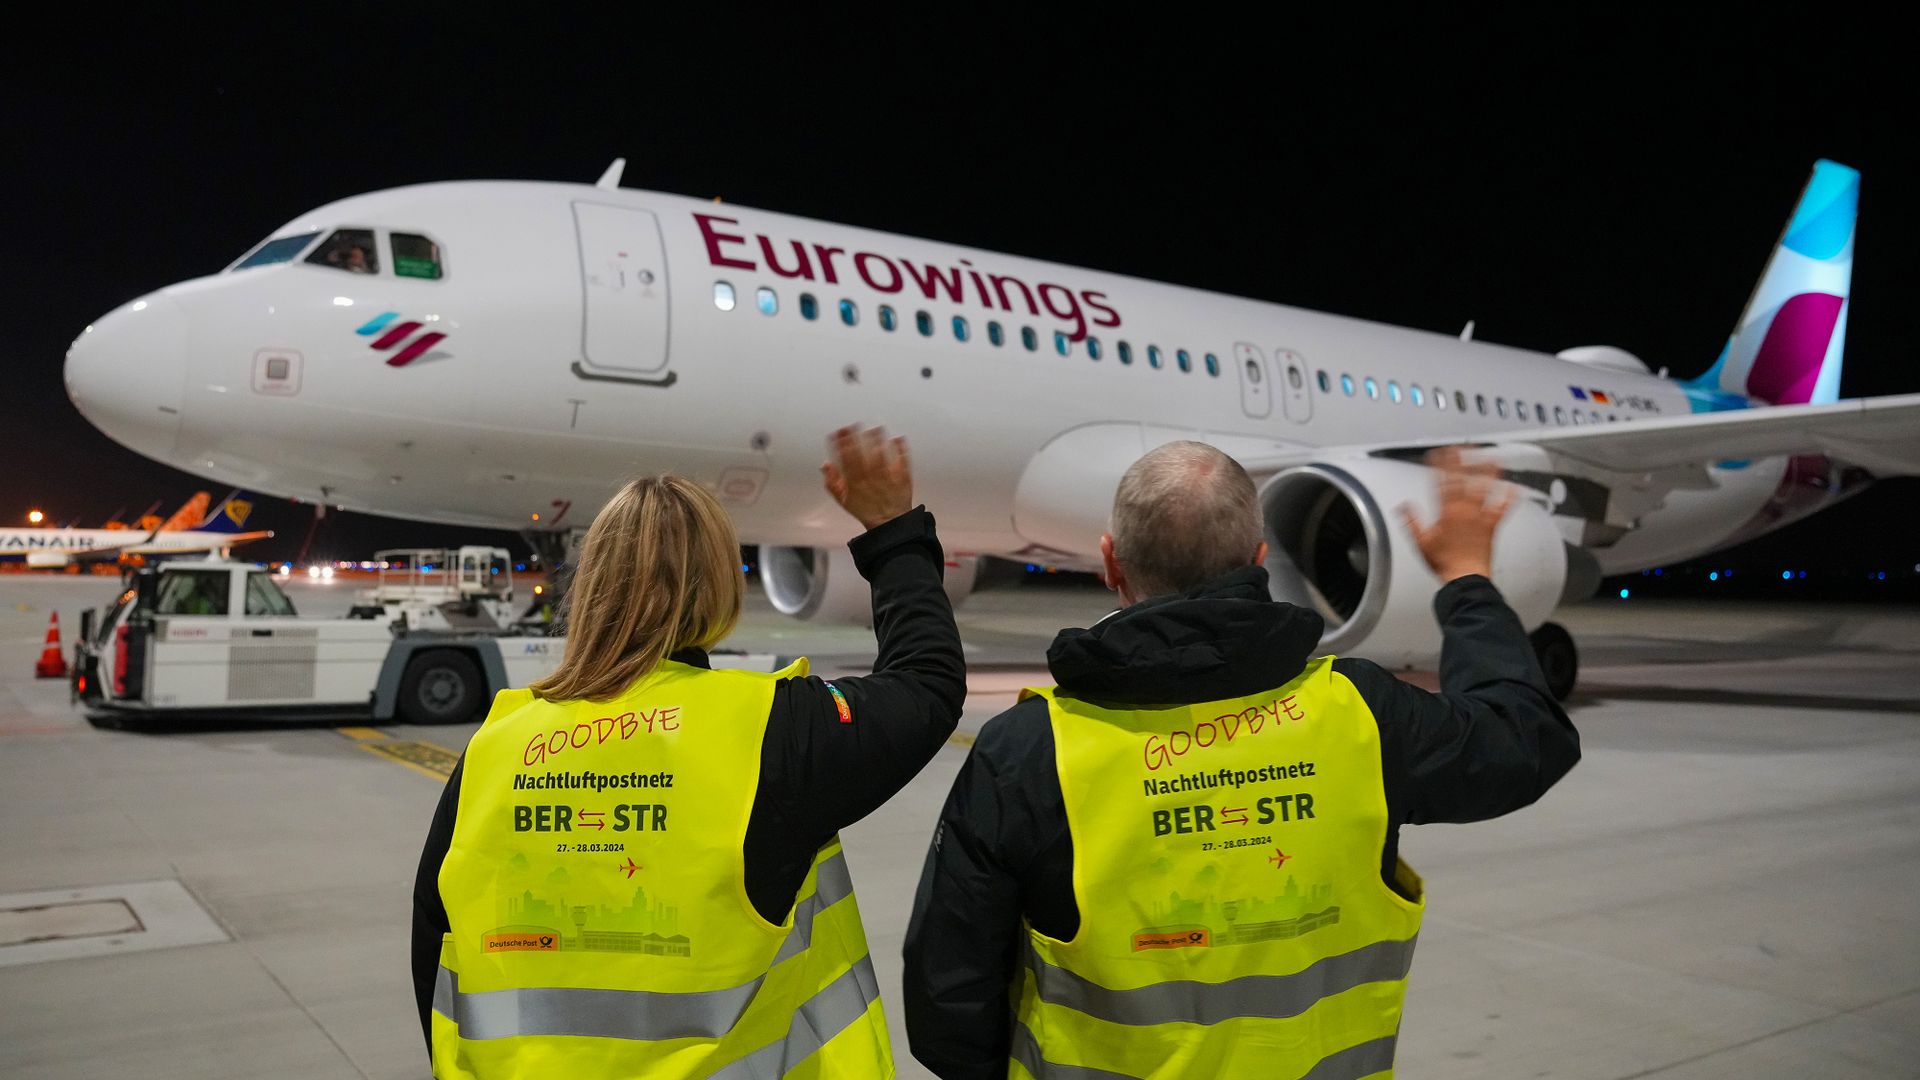 deutsche post: aus nach mehr als 62 jahren - letzte briefbeförderung per flugzeug